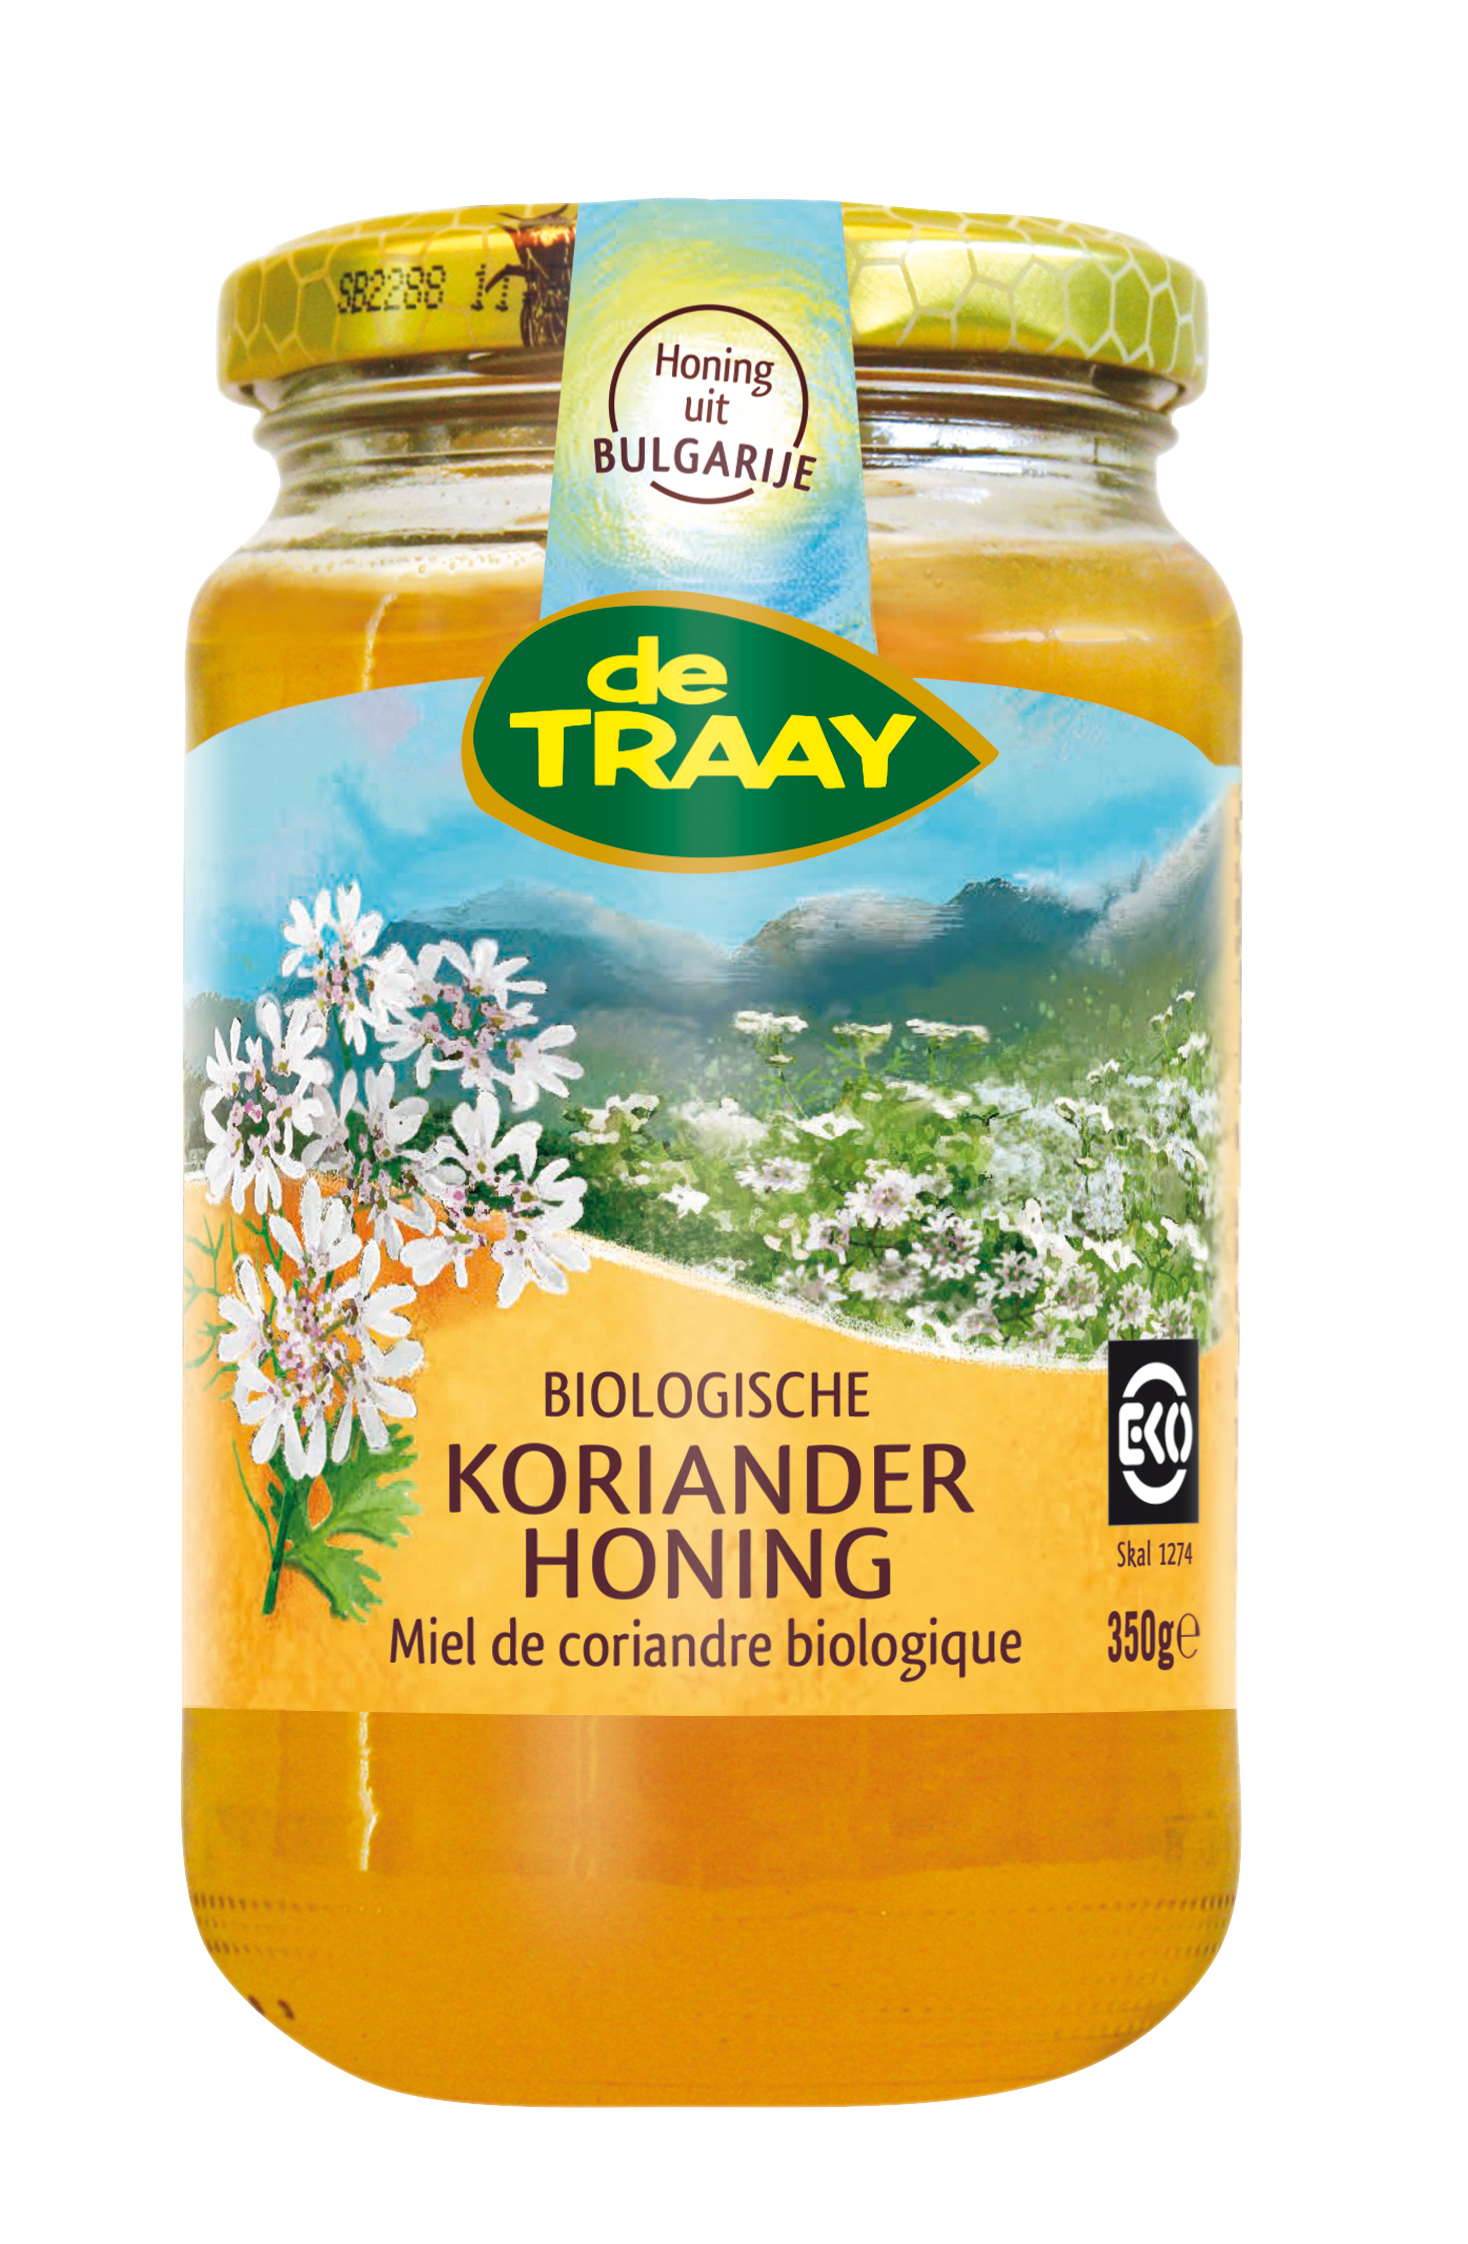 Organic coriander honey